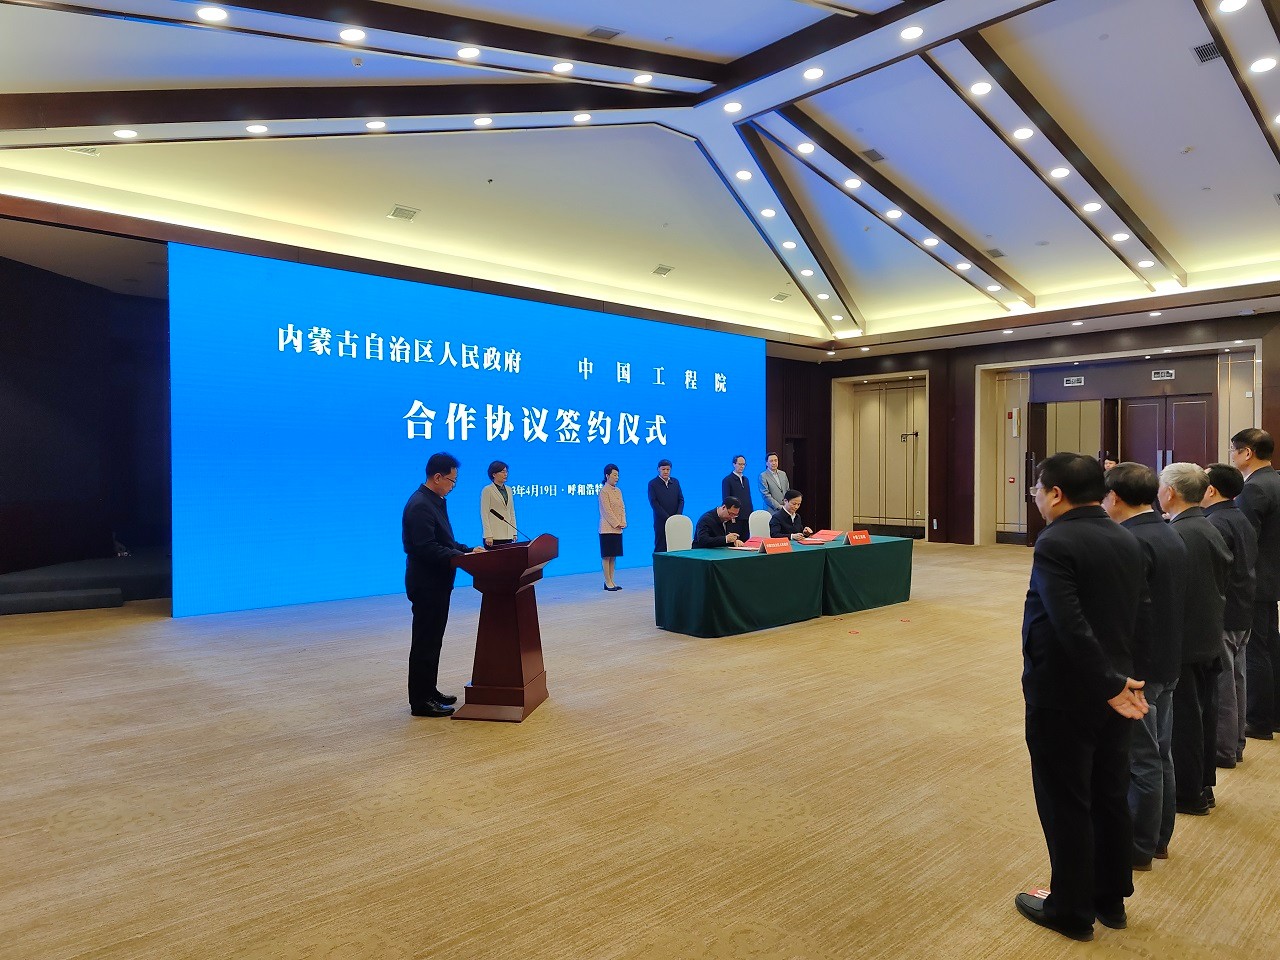 龙8long8812 内蒙古自治区人民政府合作协议签约暨中国工程科技发展战略内蒙古研究院揭牌成立